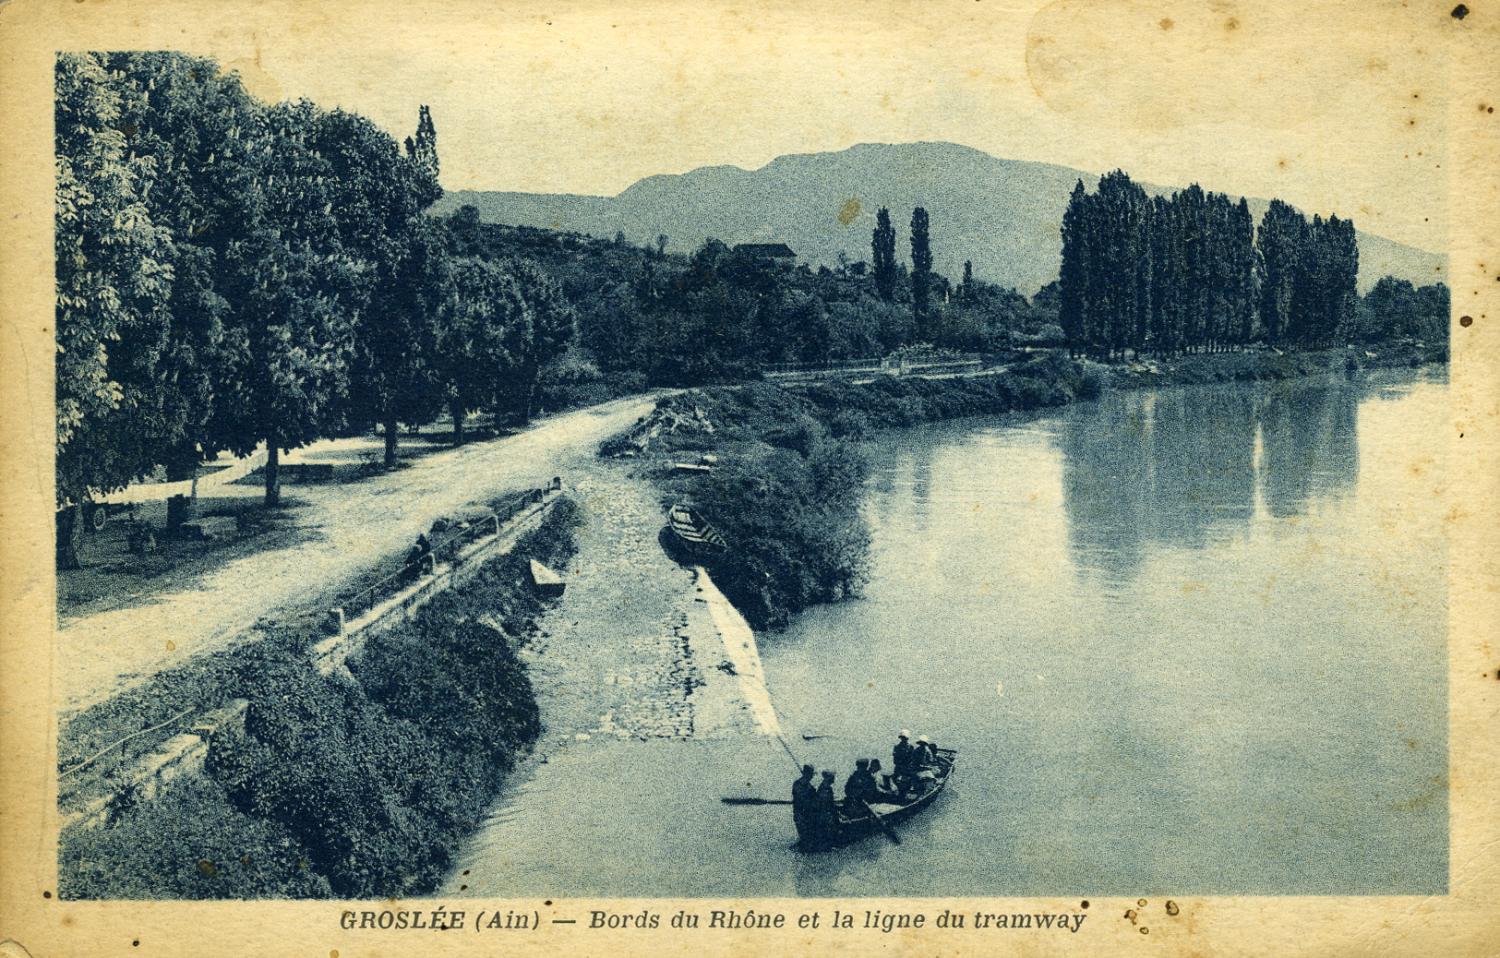 Groslée (Ain) - Bords du Rhône et la ligne du tramway.